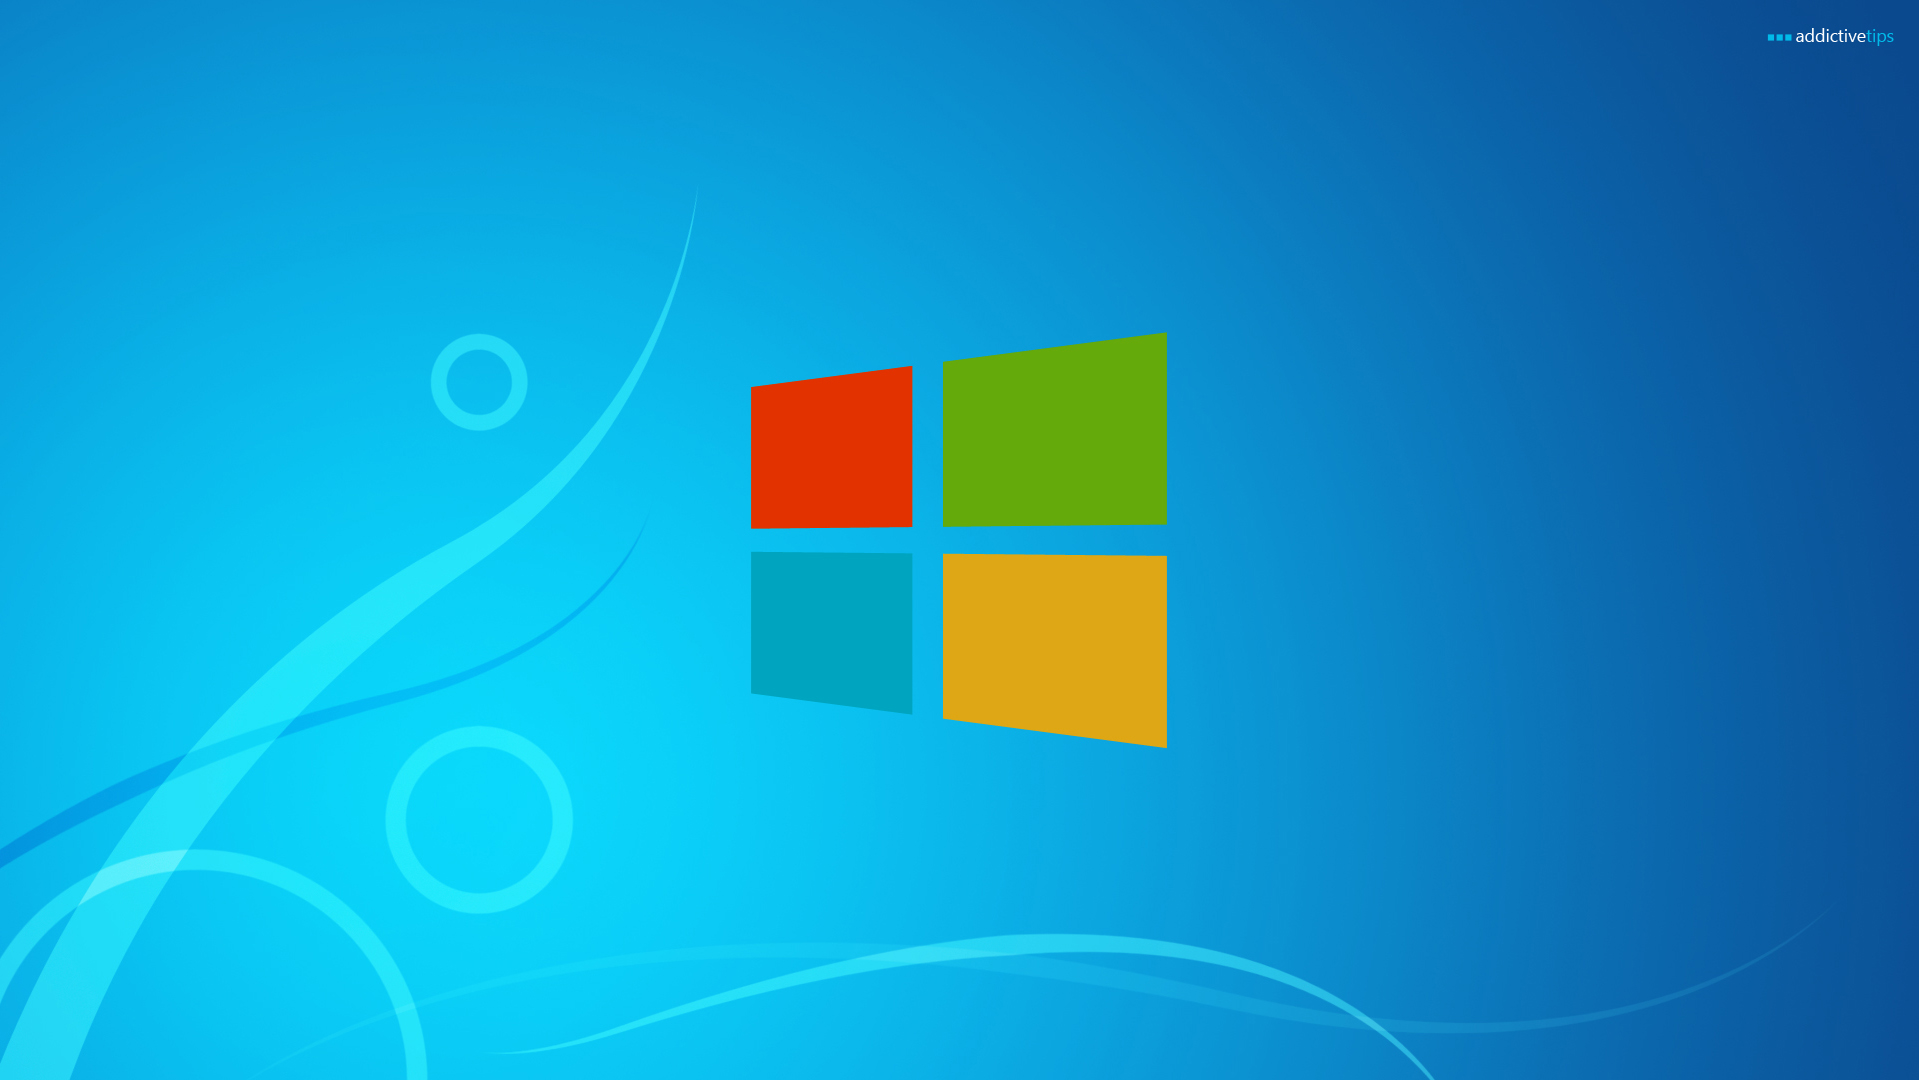 Bạn sẽ yêu thích hình nền Windows 8 với những chủ đề rất đa dạng và độc đáo. Chúng được thiết kế đặc biệt để tạo nên sự khác biệt và tinh tế trên máy tính của bạn. Chọn hình nền Windows 8 và mang lại nét đẹp tươi mới cho giao diện máy tính của bạn.